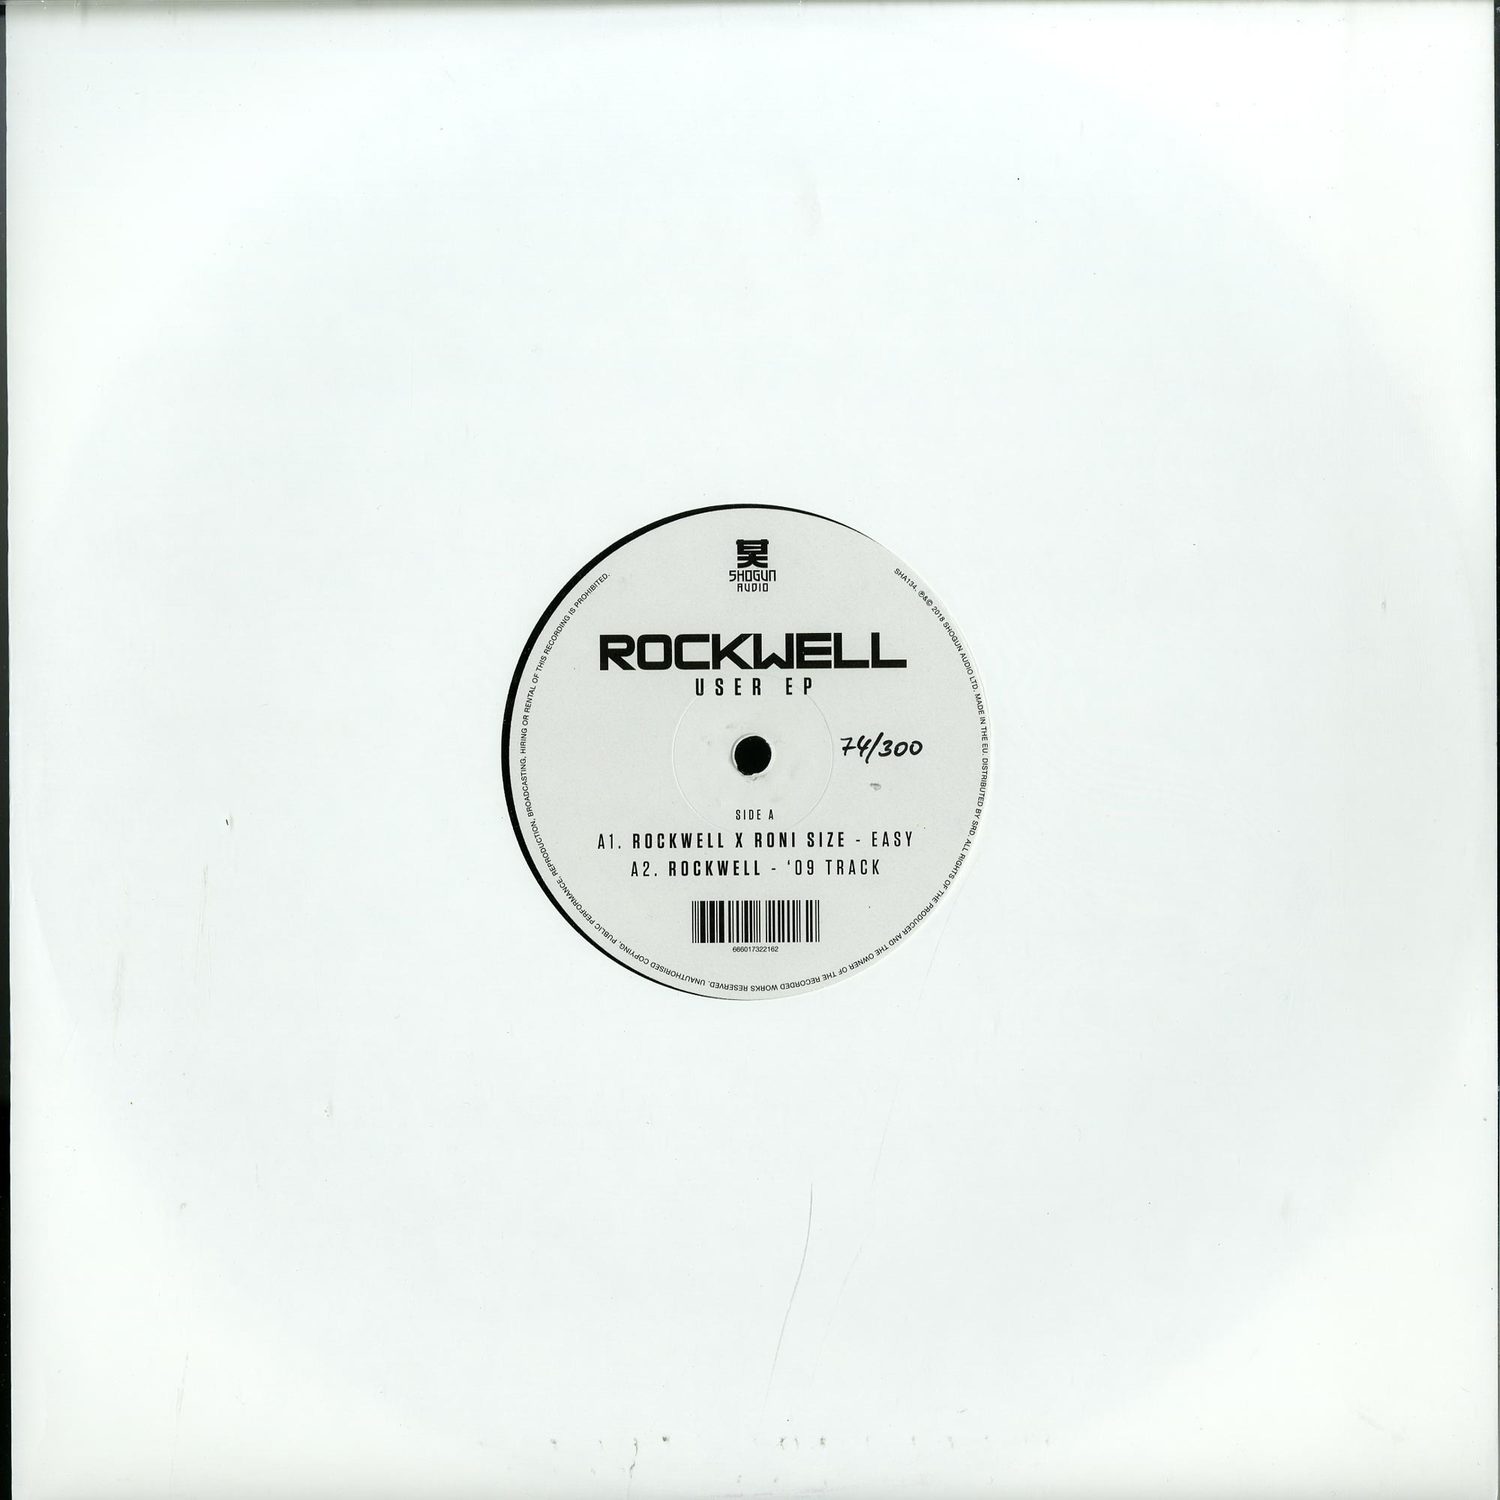 Rockwell - USER EP